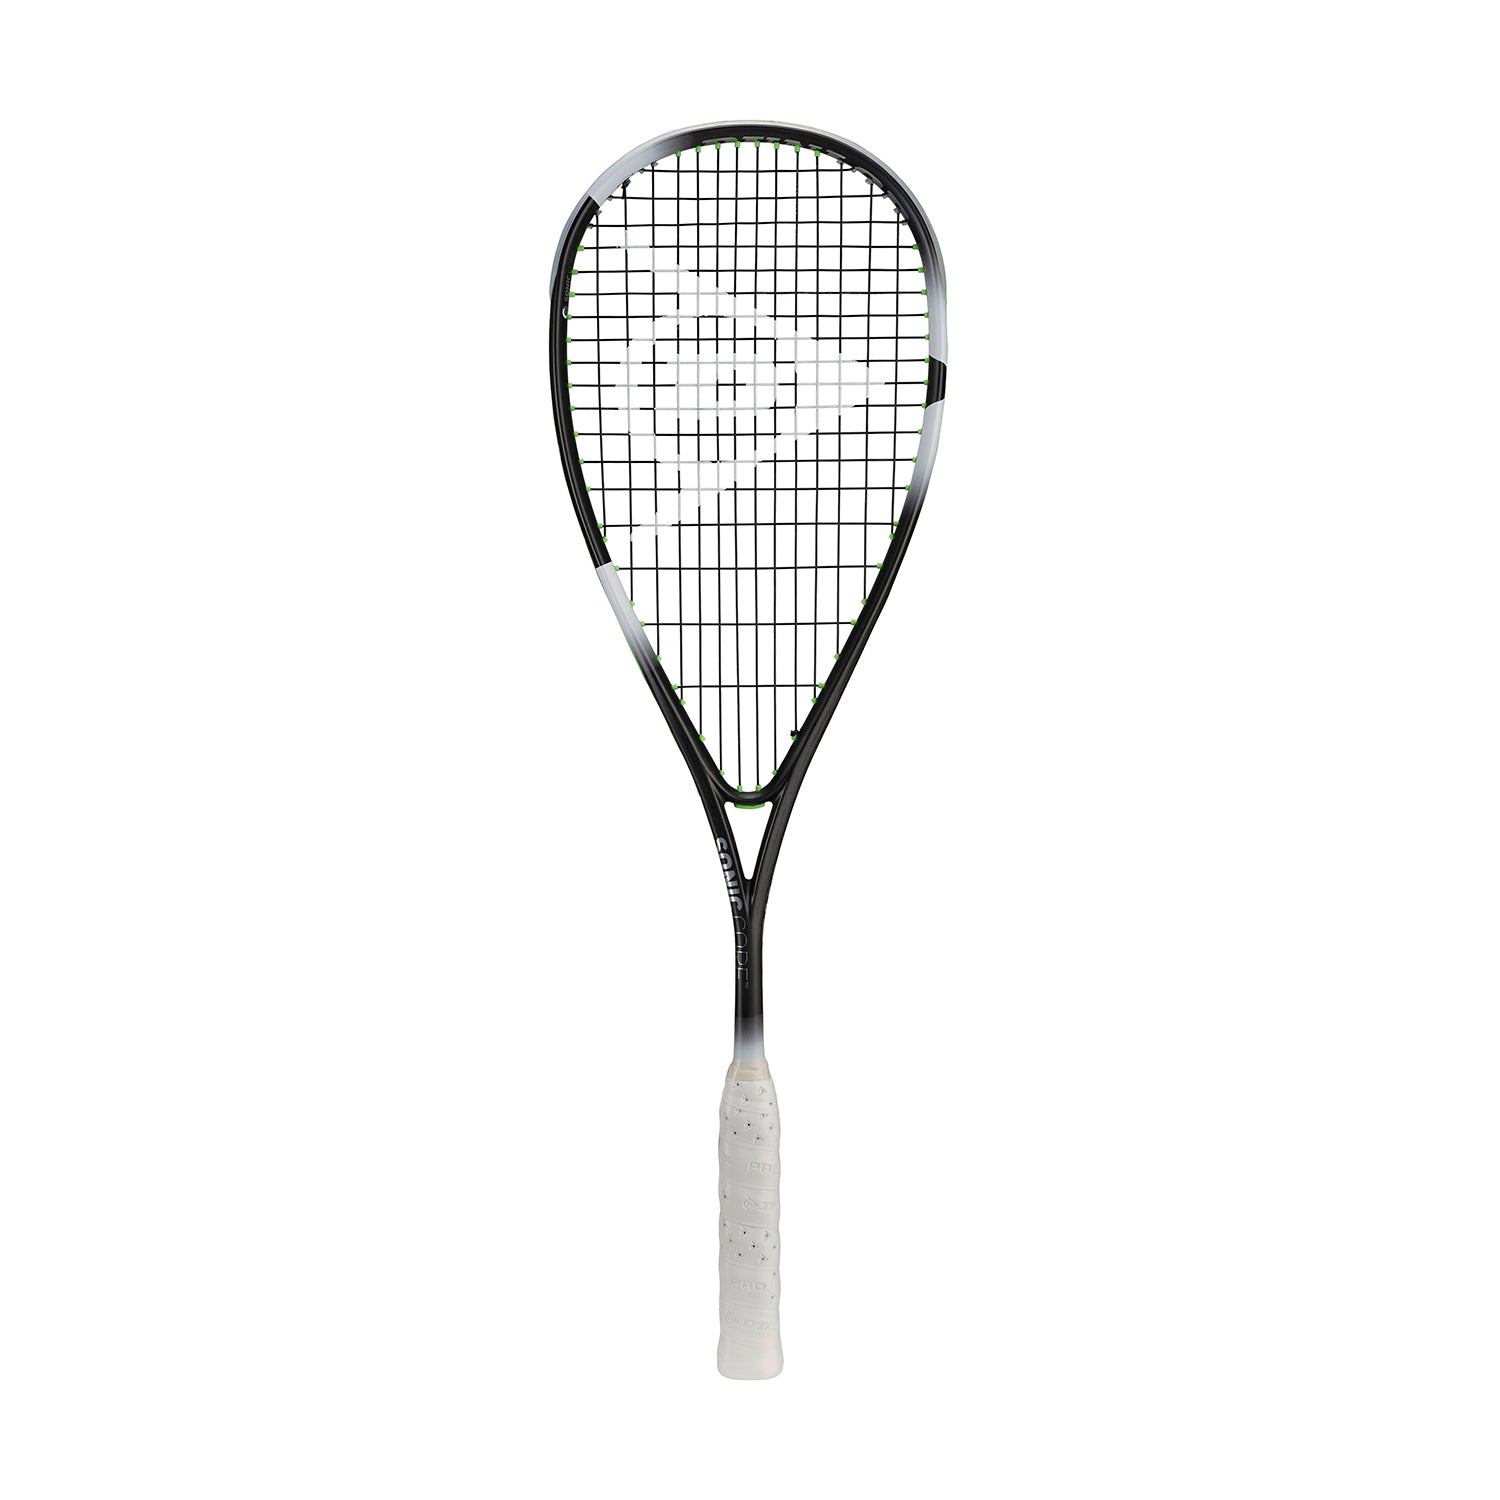 Dunlop SonicCore Evolution 130 Squash Racquet